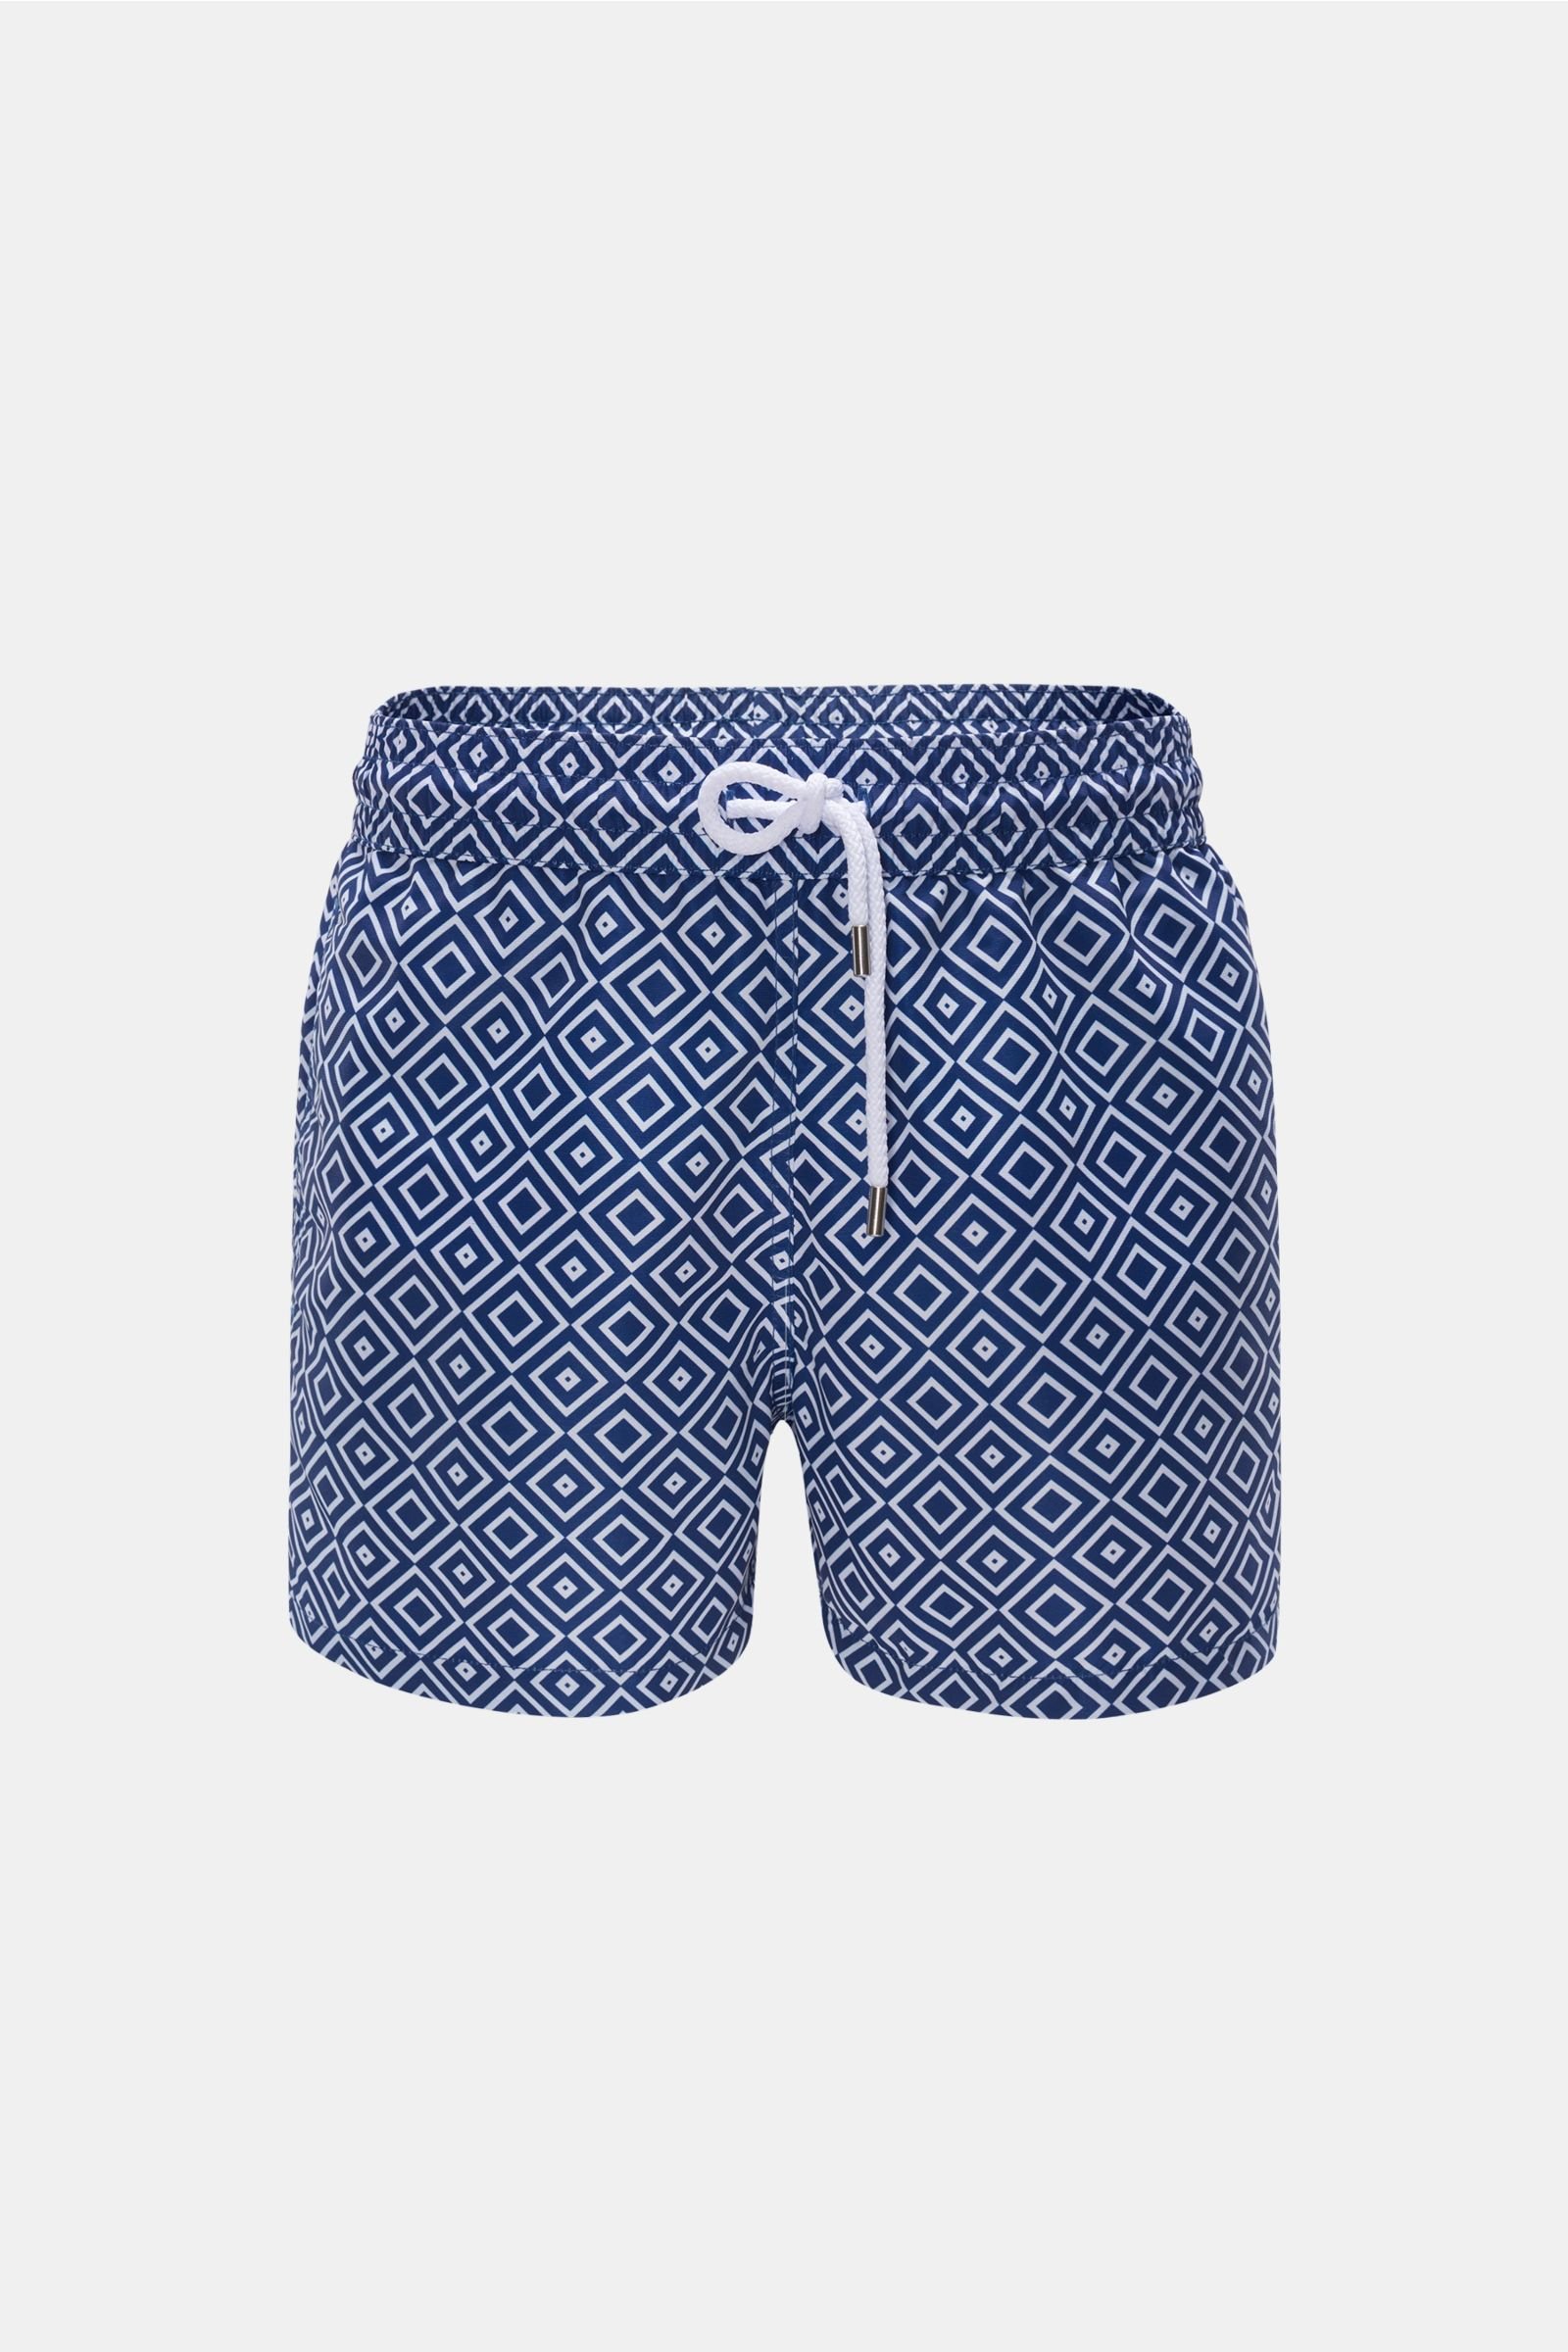 Swim shorts 'Sidewalk' navy/white patterned